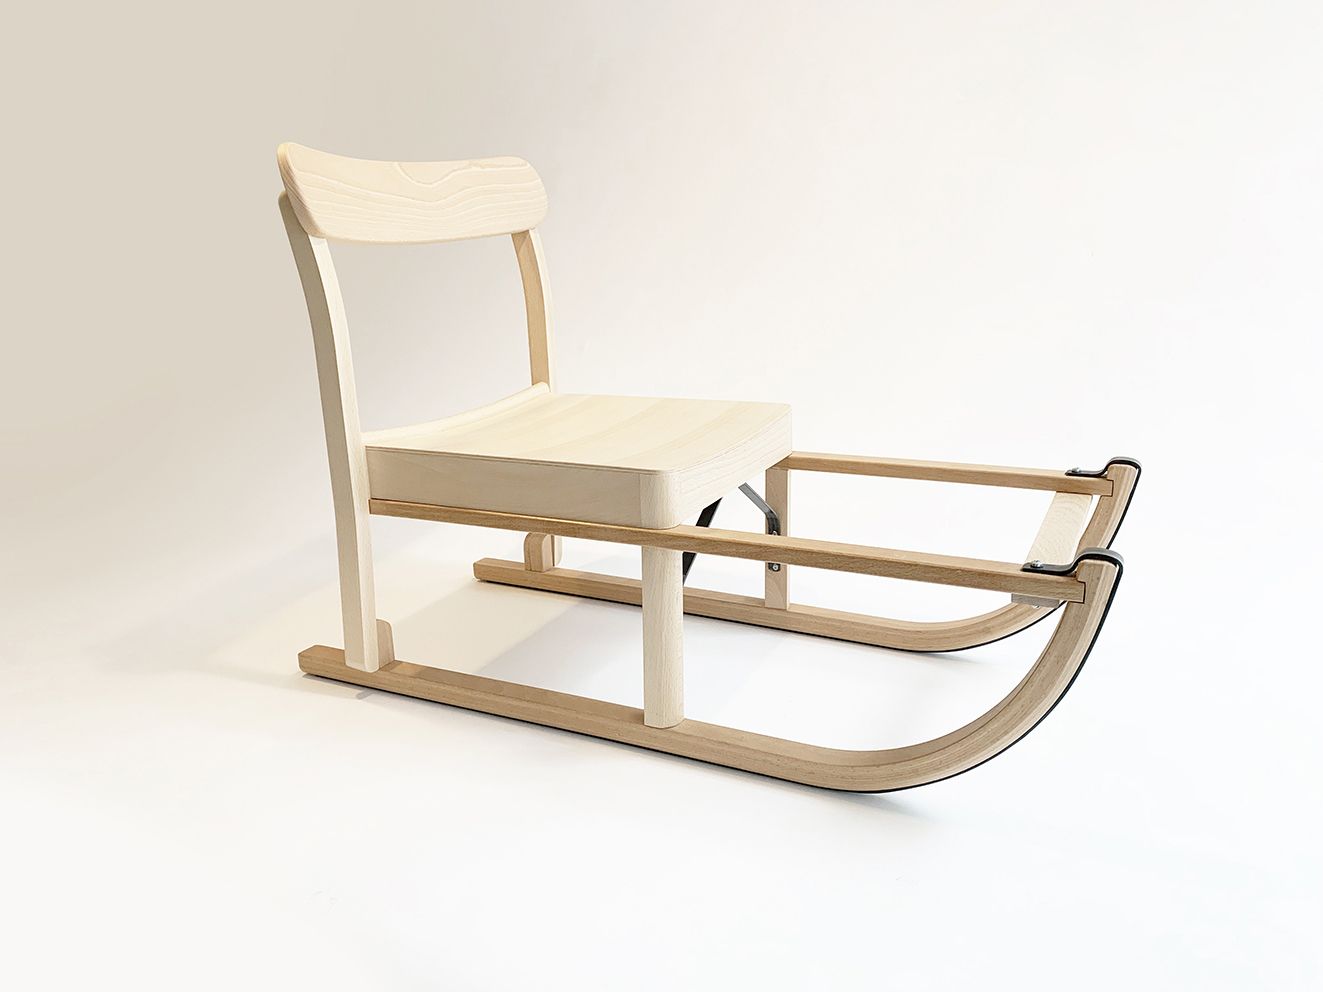 Grégoire de Lafforest Sled chair



"La Chaise Atelier a été conçue par TAF Stud&hellip;